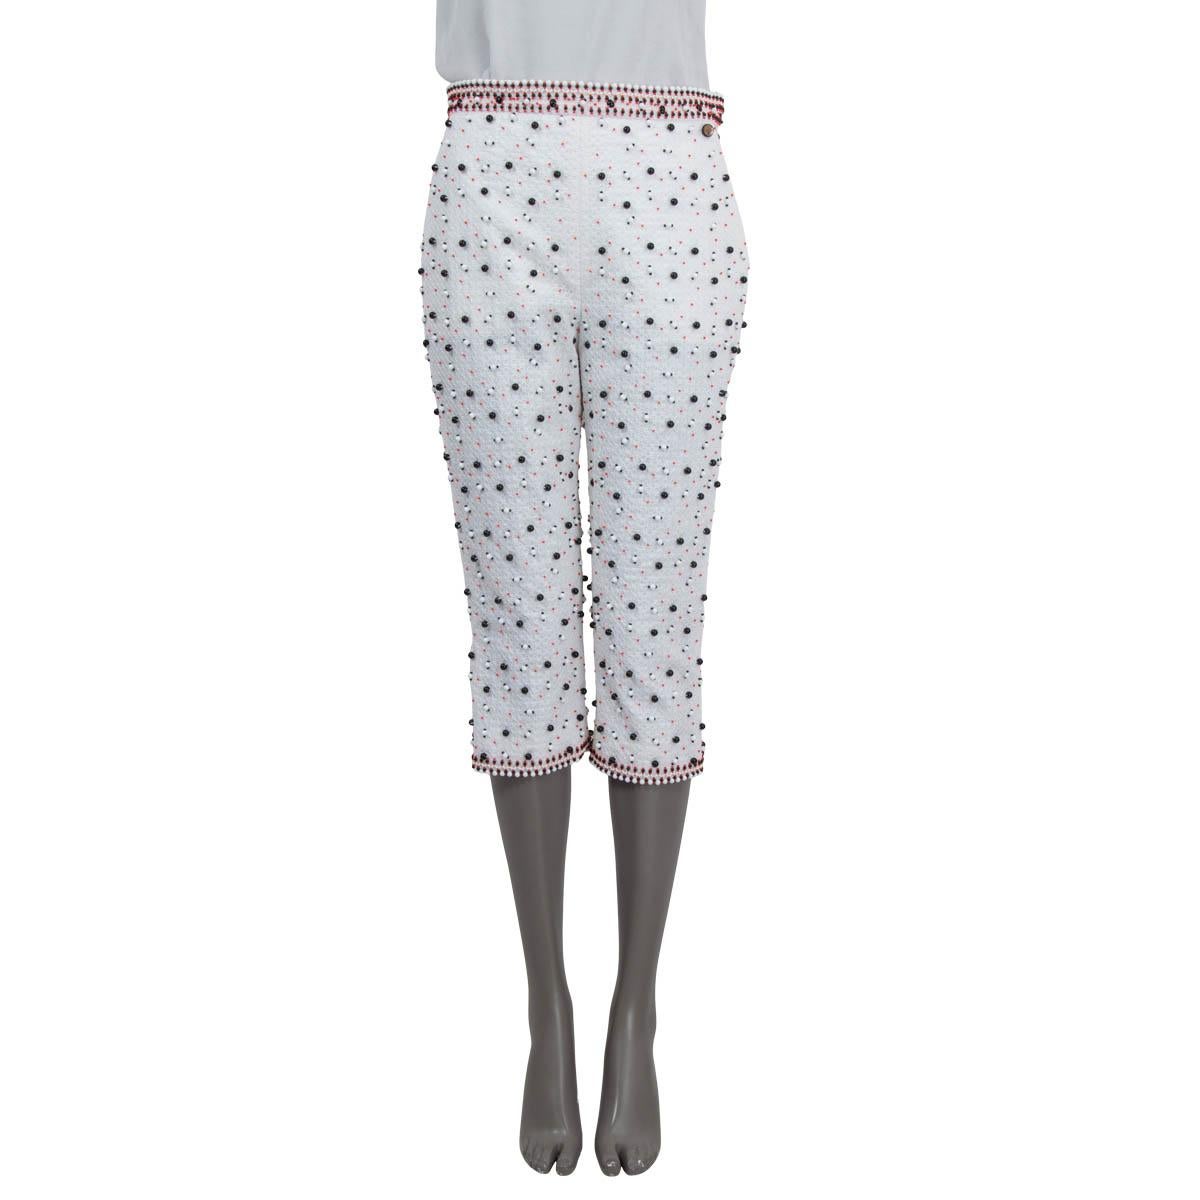 100% authentique Chanel 2019 La Pausa pantalon capri en coton blanc (86%) et polyester (14%). Le pantalon est orné de perles, de deux poches latérales fendues et de poignets zippés. Ouverture avec une fermeture éclair dissimulée, deux crochets et un